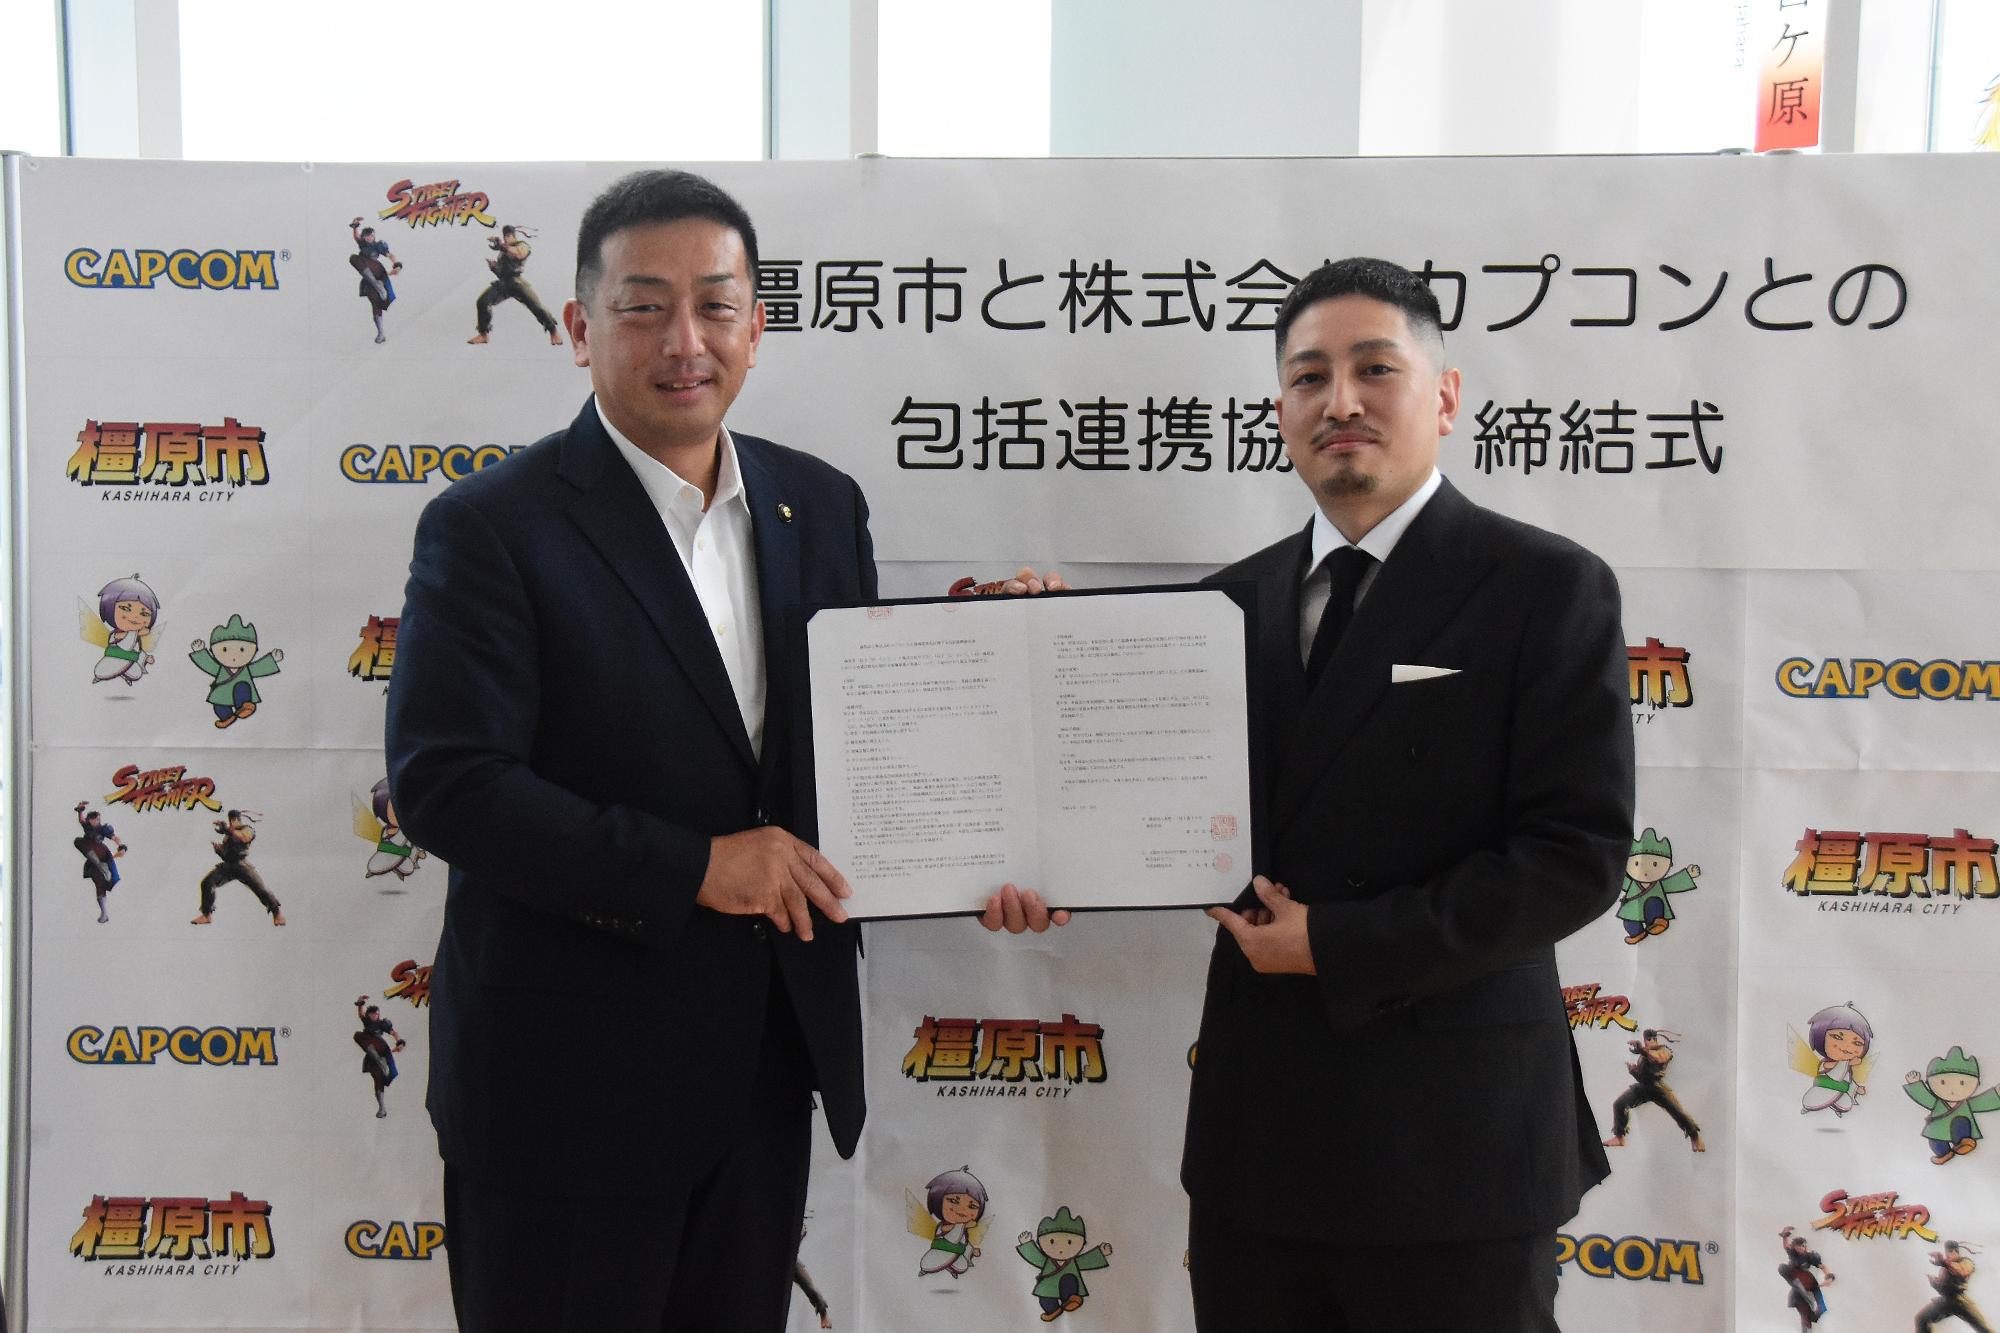 橿原市長と「ストリートファイター」シリーズプロデューサー松本脩平さんが協定書を一緒に持っている写真